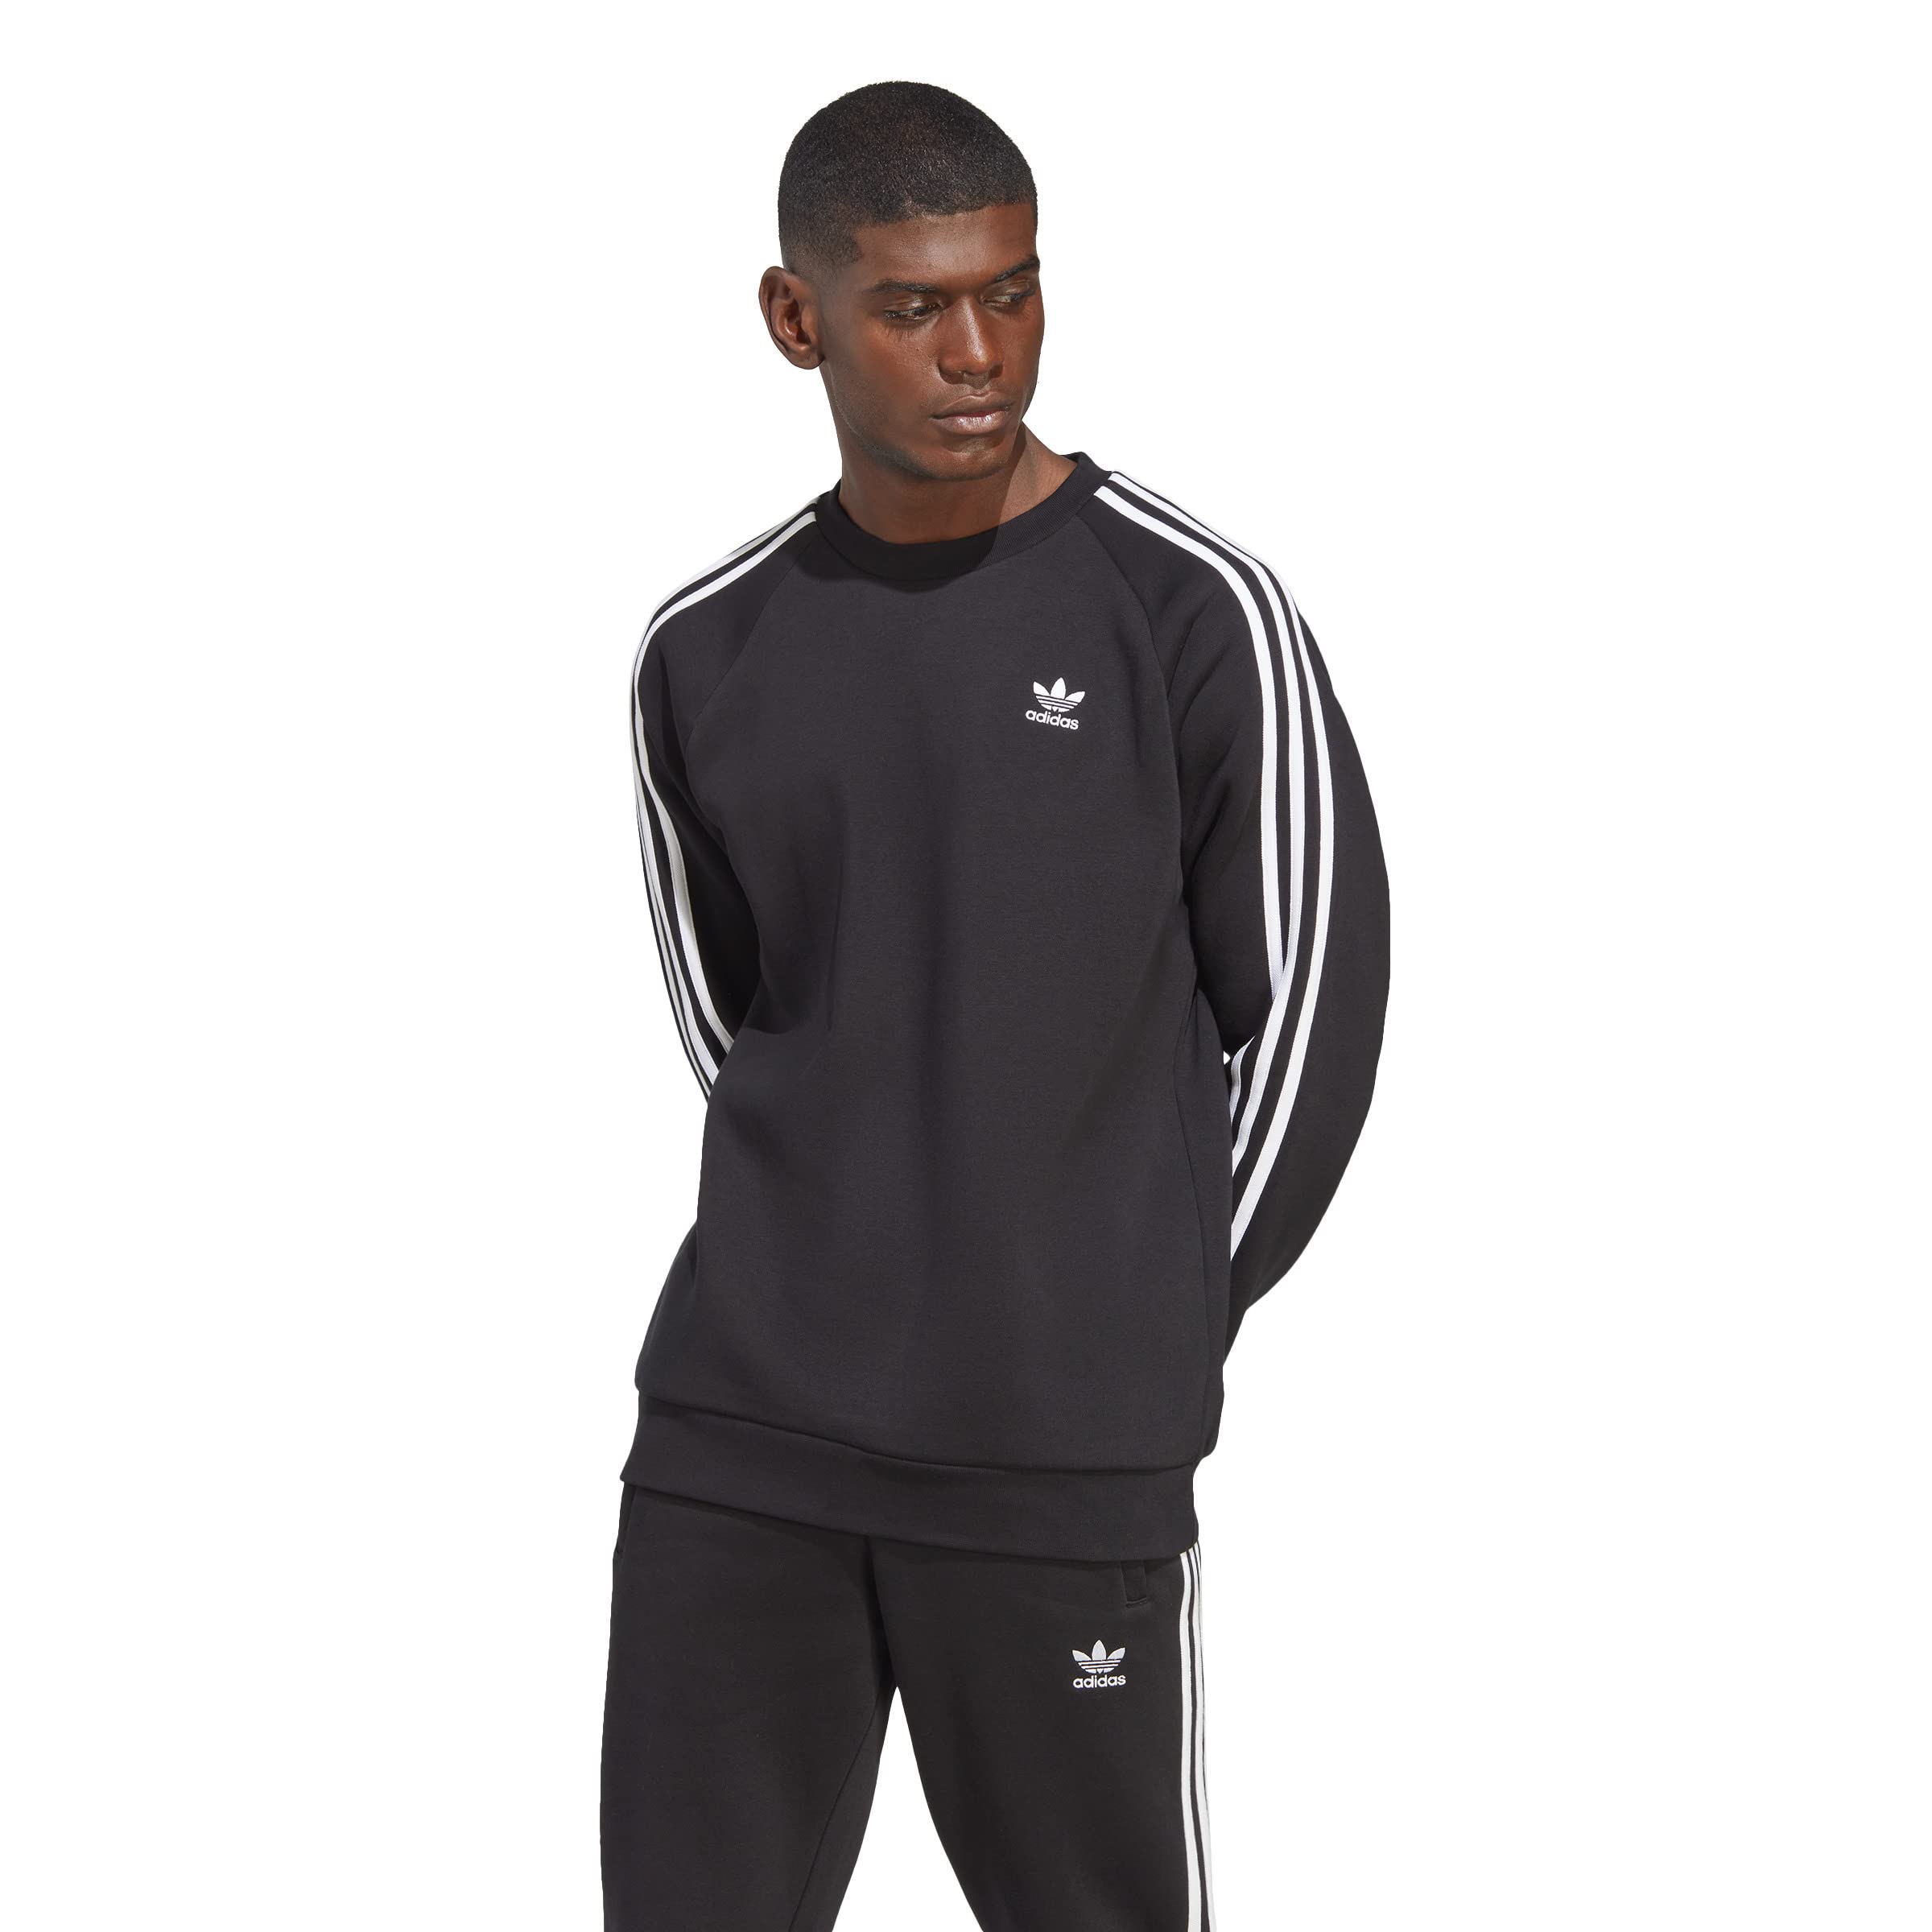 Мужской свитер с эмблемой 3-Полоски Adidas Adidas